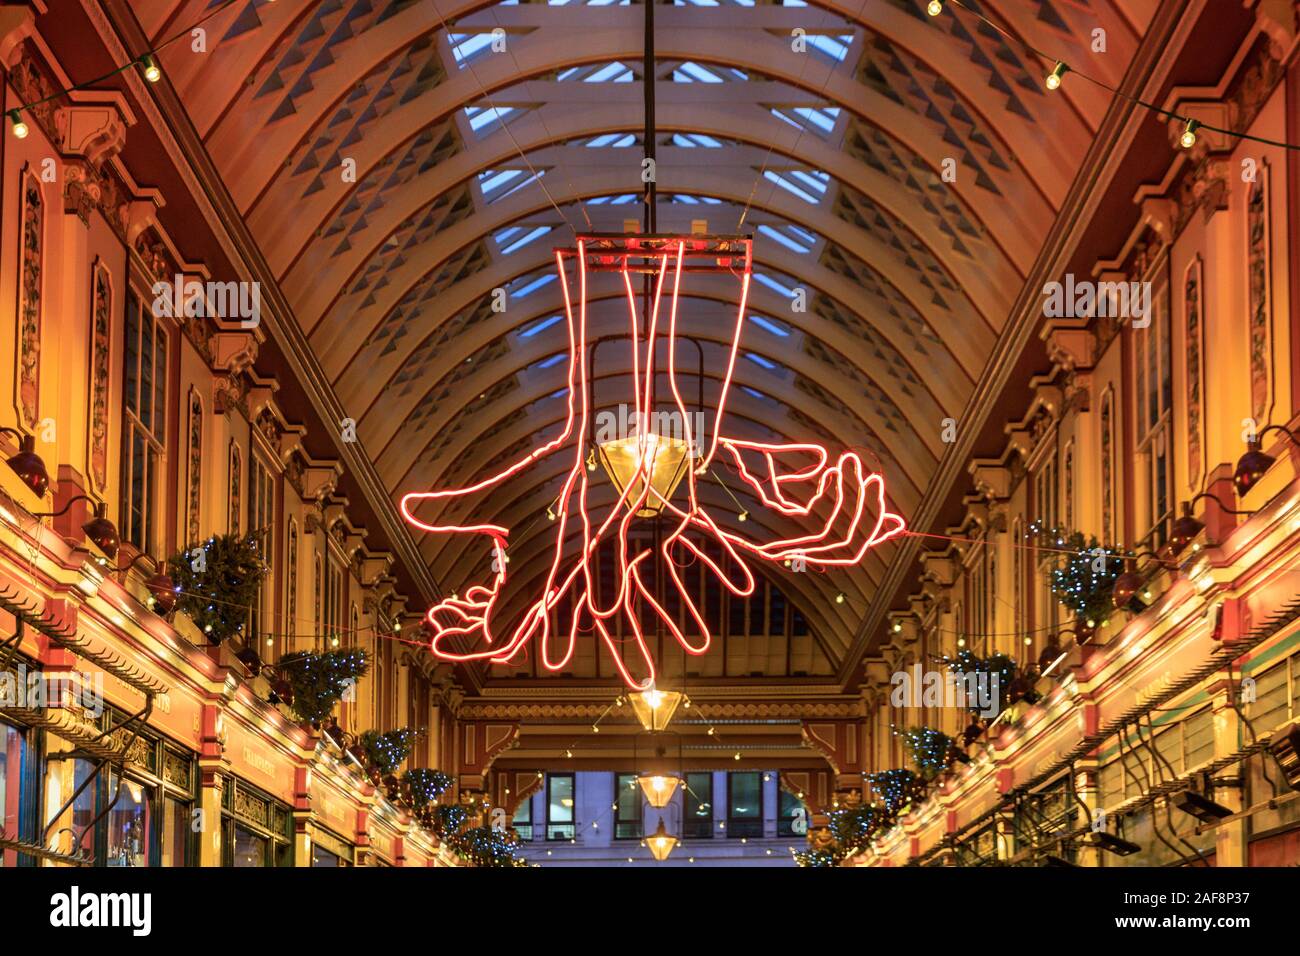 An Weihnachten Leadenhall Market, mit 'Quelle' von Patrick Tuttofuoco, neon Hände Kommunikation mittels Gebärdensprache, Skulptur in der Stadt, London, UK Stockfoto